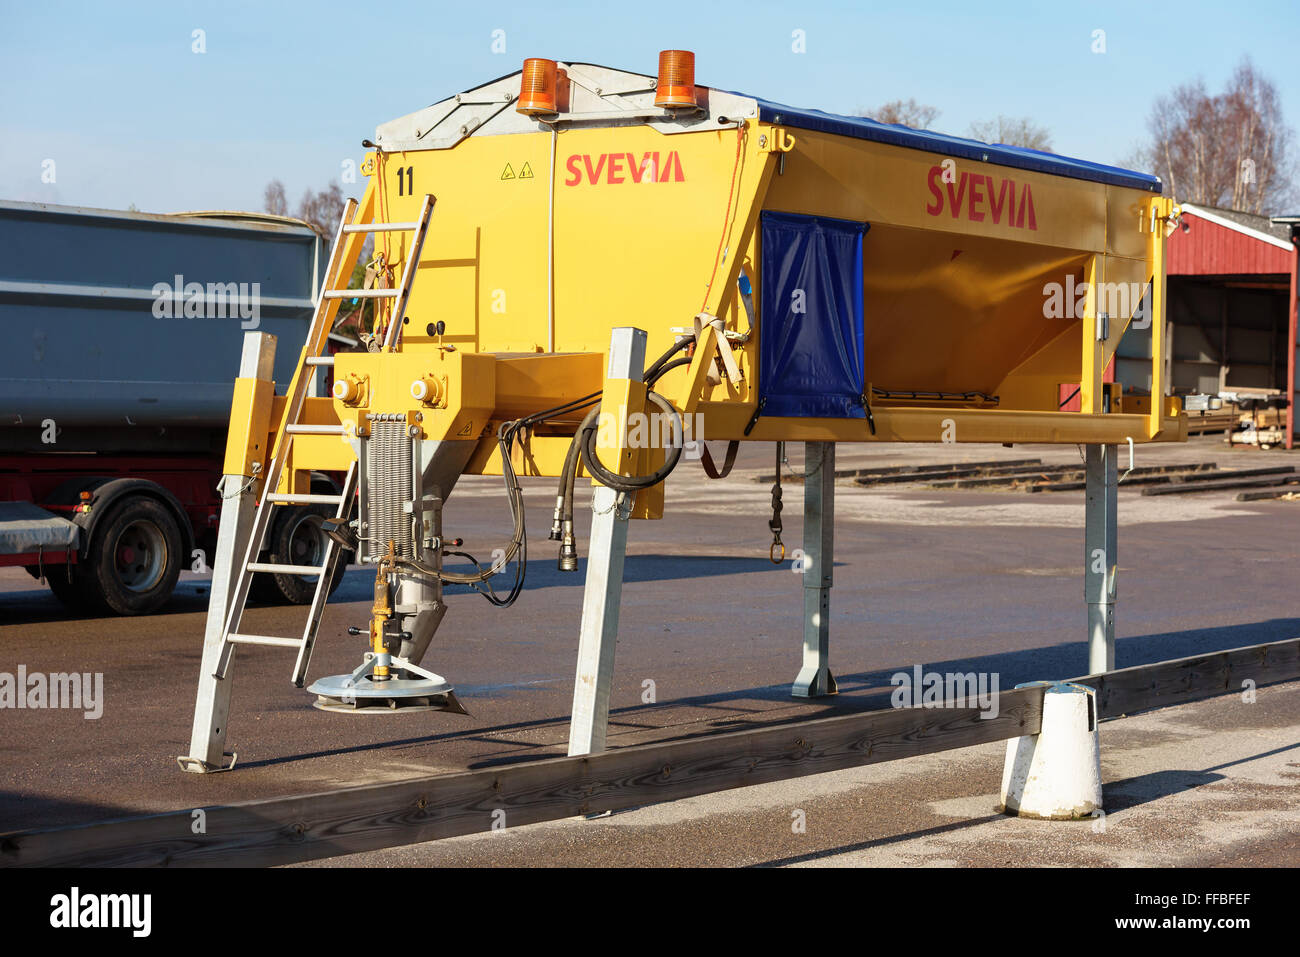 Brakne-Hoby, Suecia - Febrero 07, 2016: De color amarillo brillante carretera Svevia stand esparcidor de sal sobre pilotes en un parking fuera de una hectárea Foto de stock